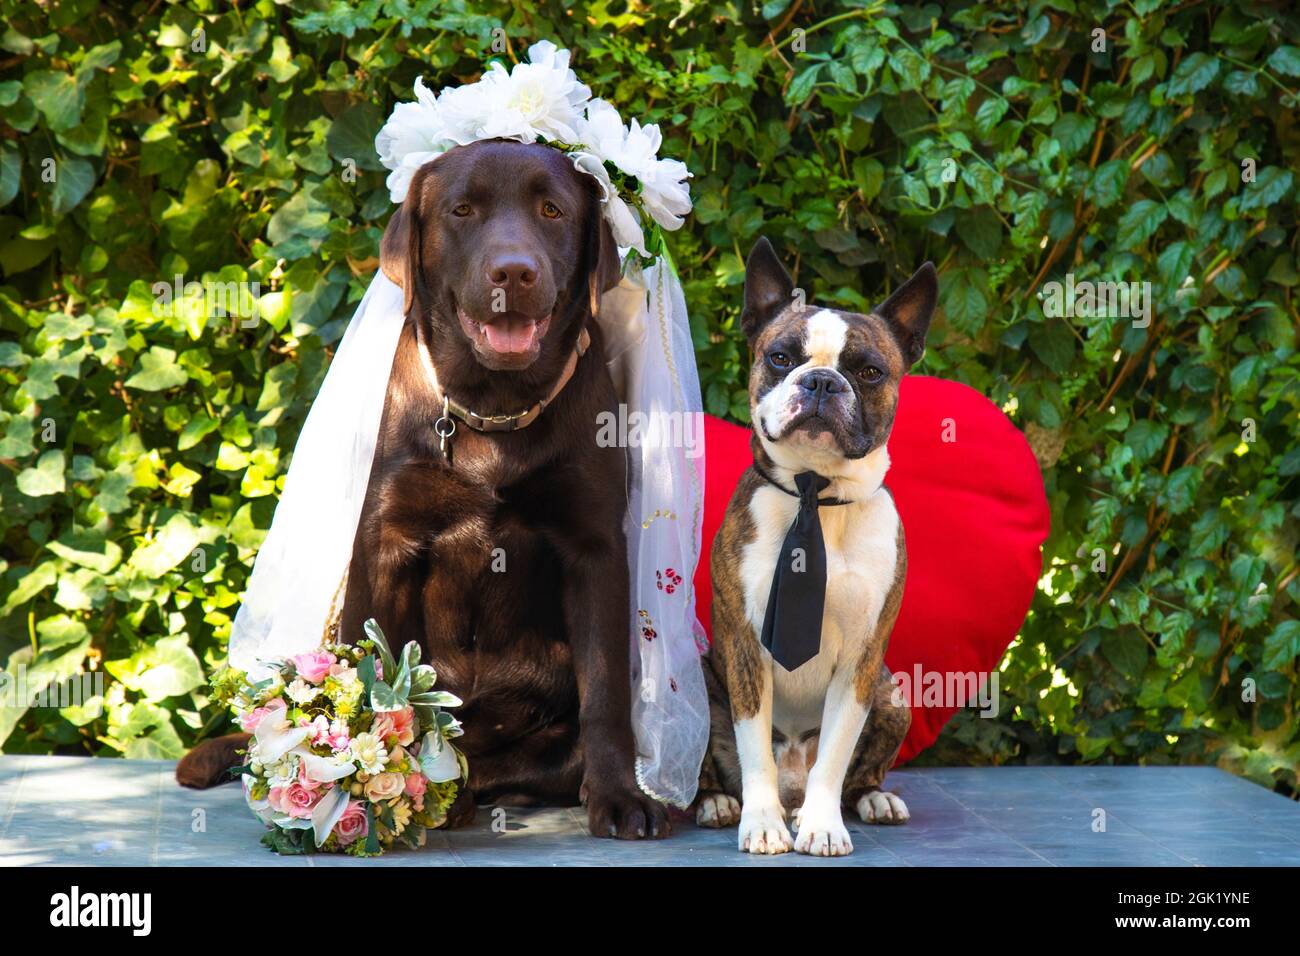 Photographie de mariage, mariée Labrador et marié Boston Terrier, chiens comme des gens, photo de bande dessinée Banque D'Images